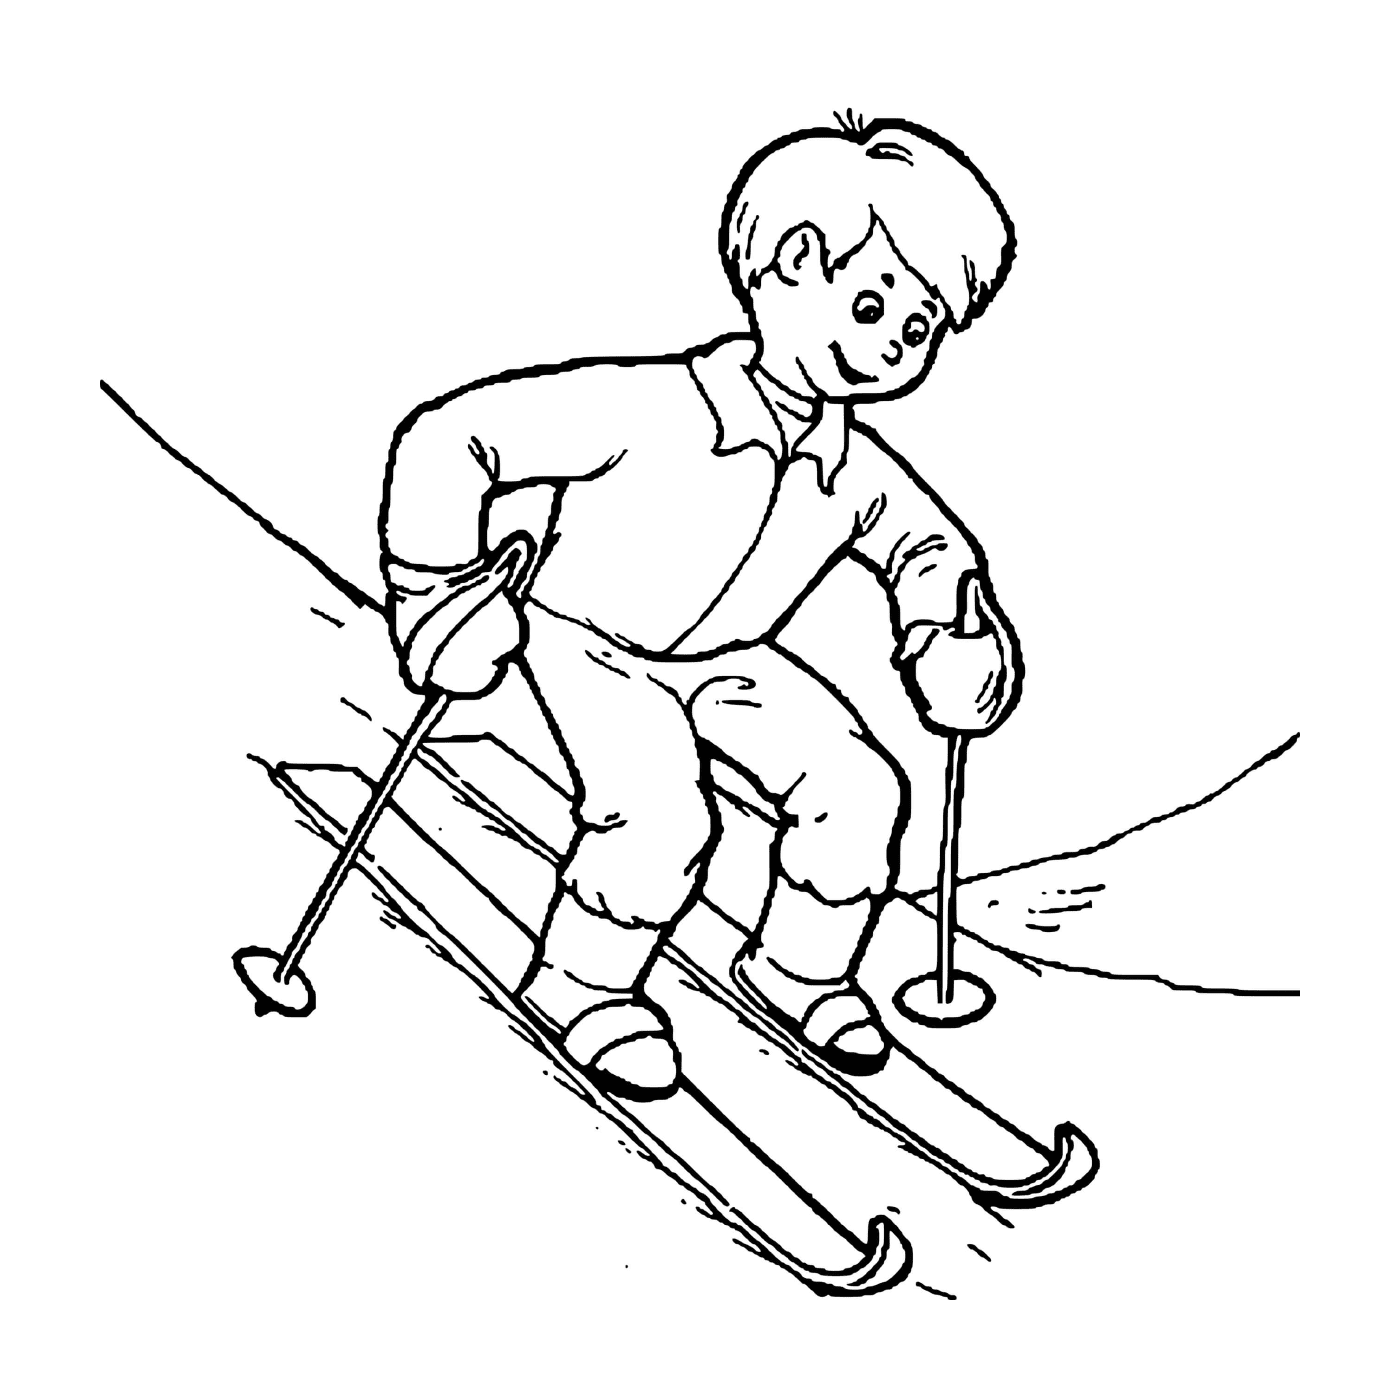  孩子们学着热心滑滑雪 